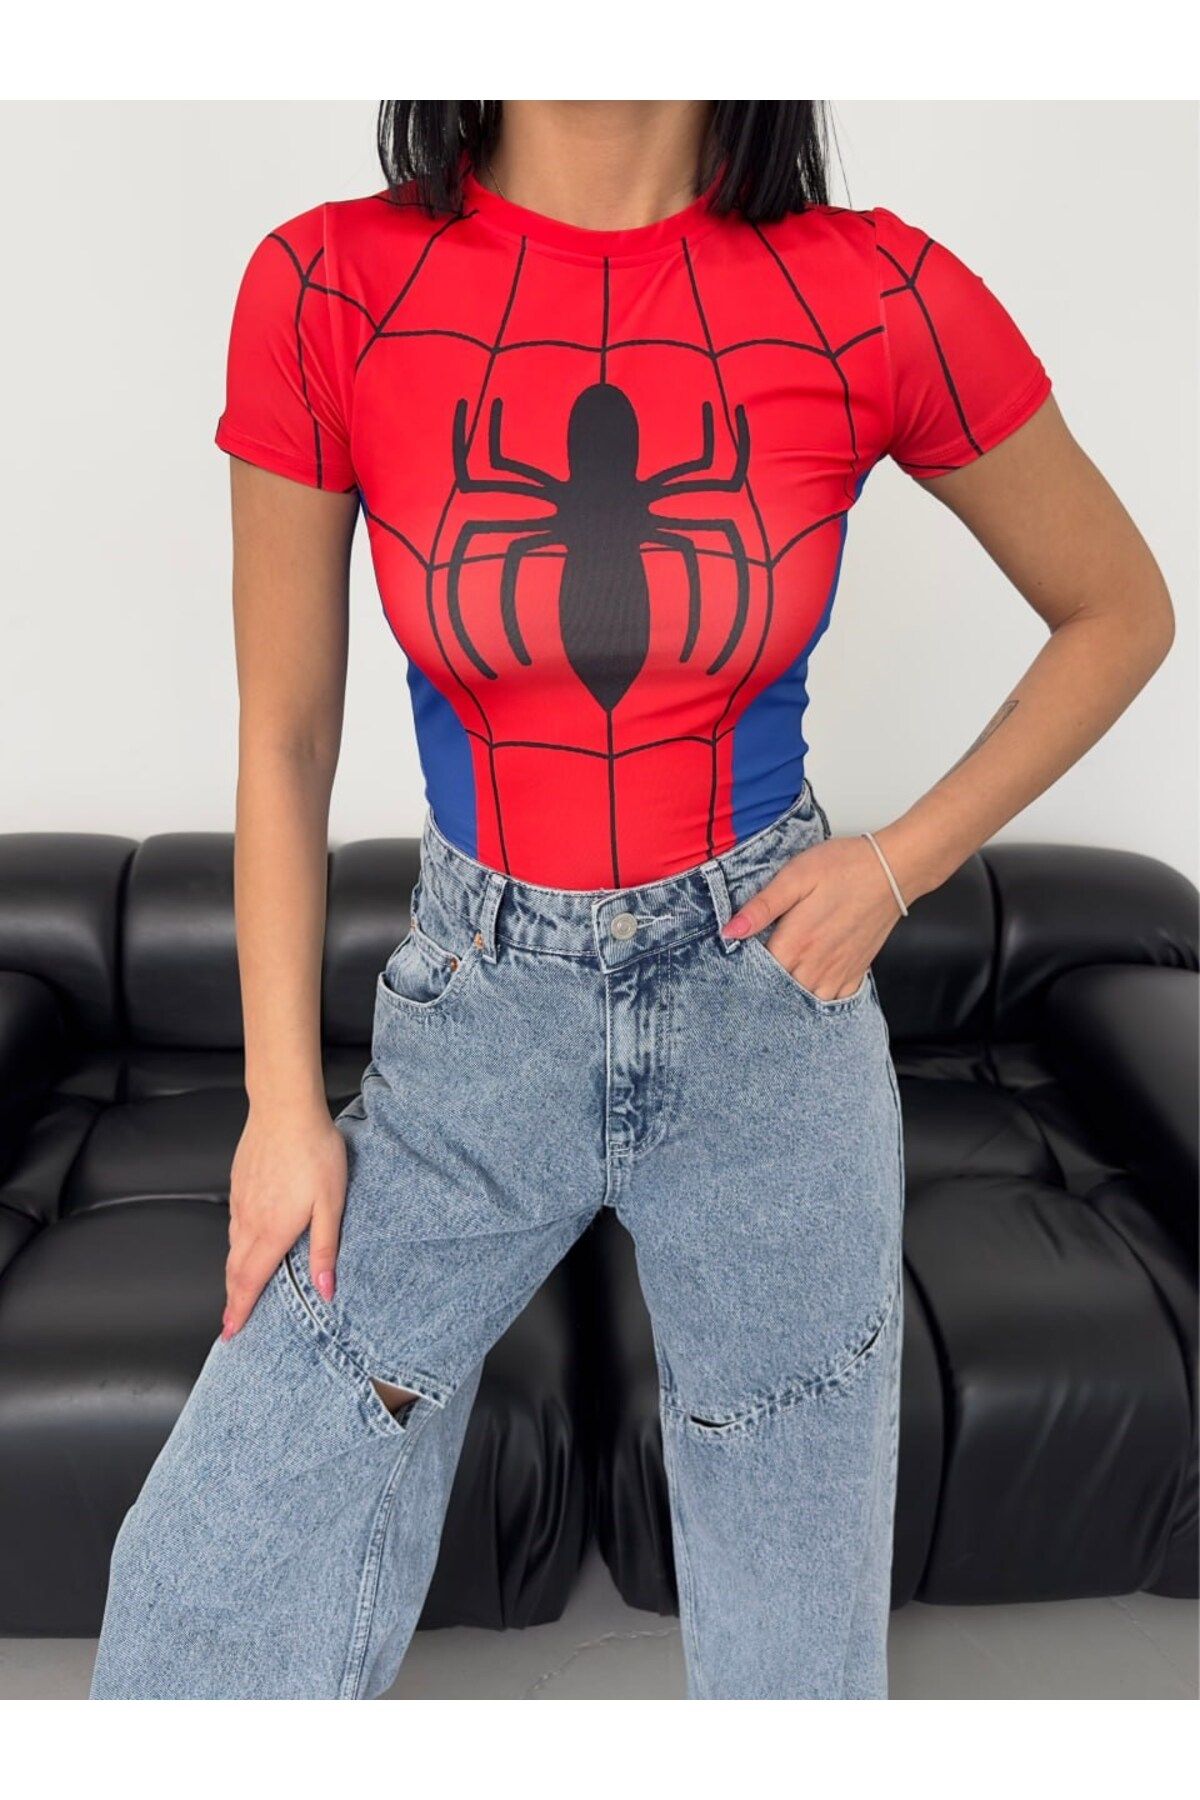 GOSSİP TEAM Cosplay Retro Red-Spider  Body T-Shirt